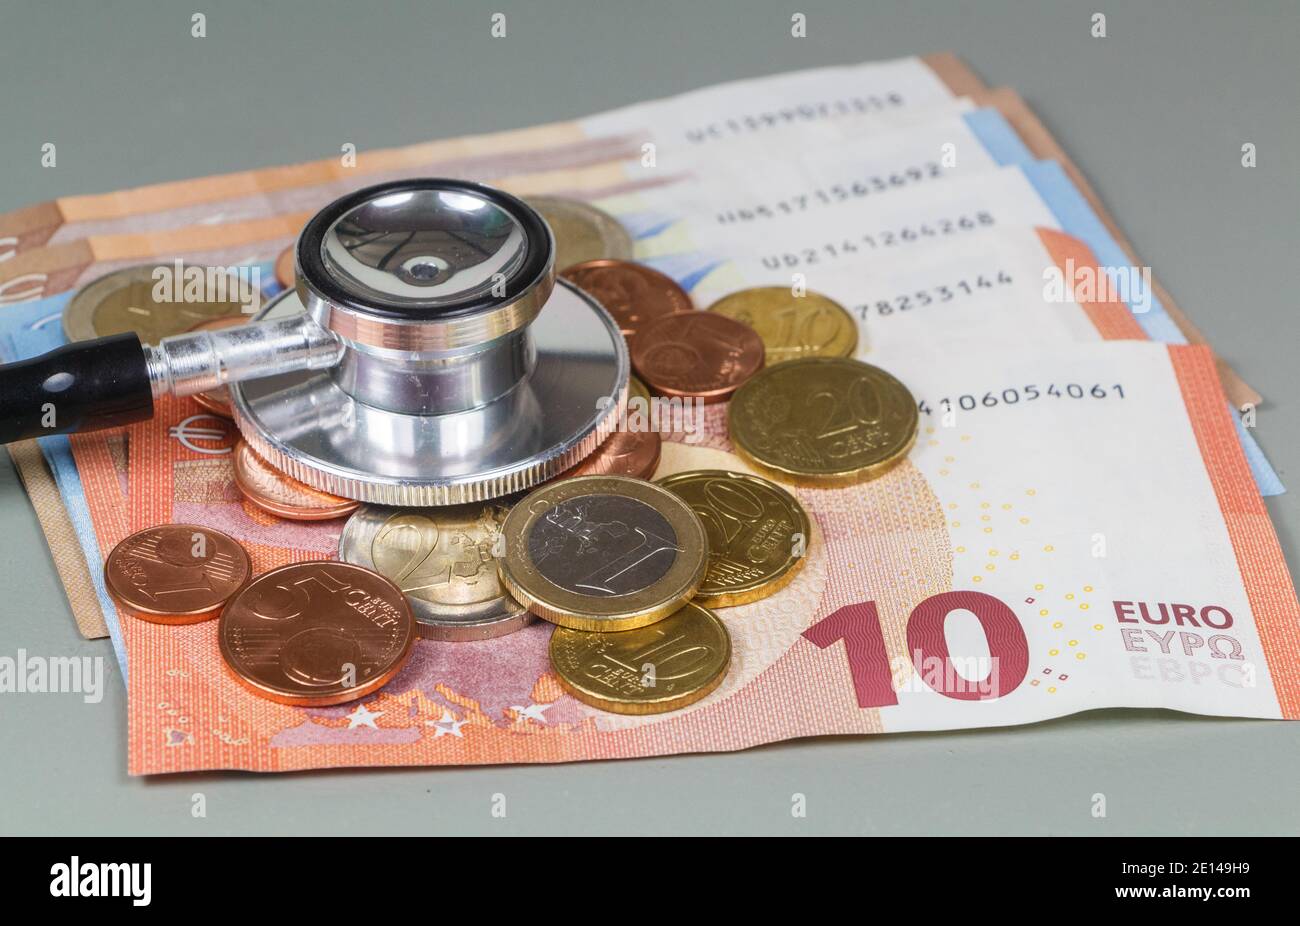 Stéthoscope noir mis sur les pièces et les billets en euros pour symboliser le coût des soins de santé Banque D'Images